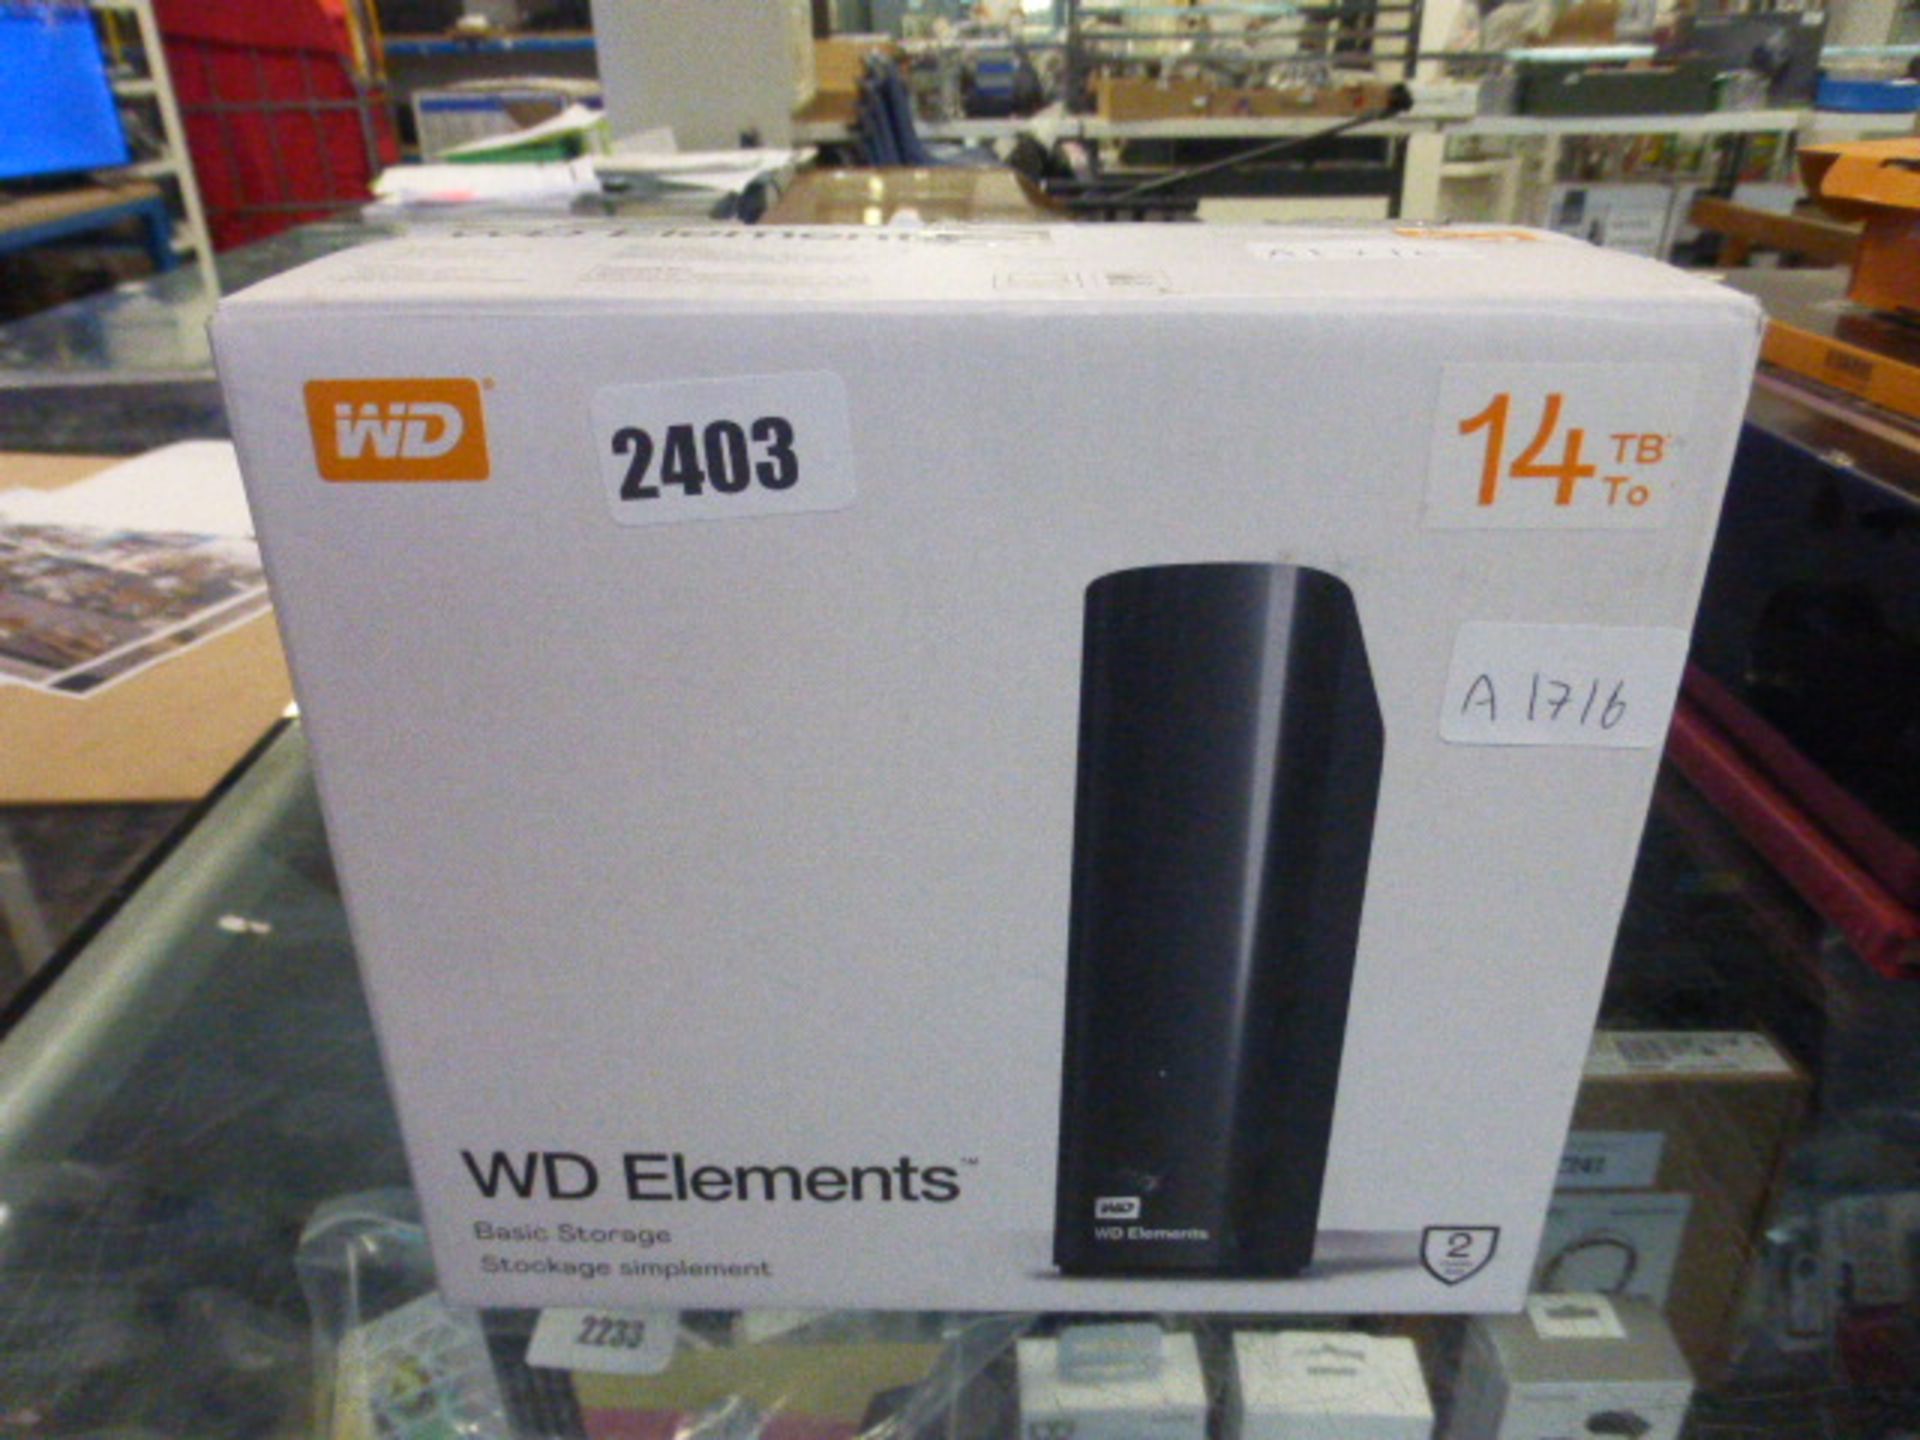 Western digital elements storage system in box